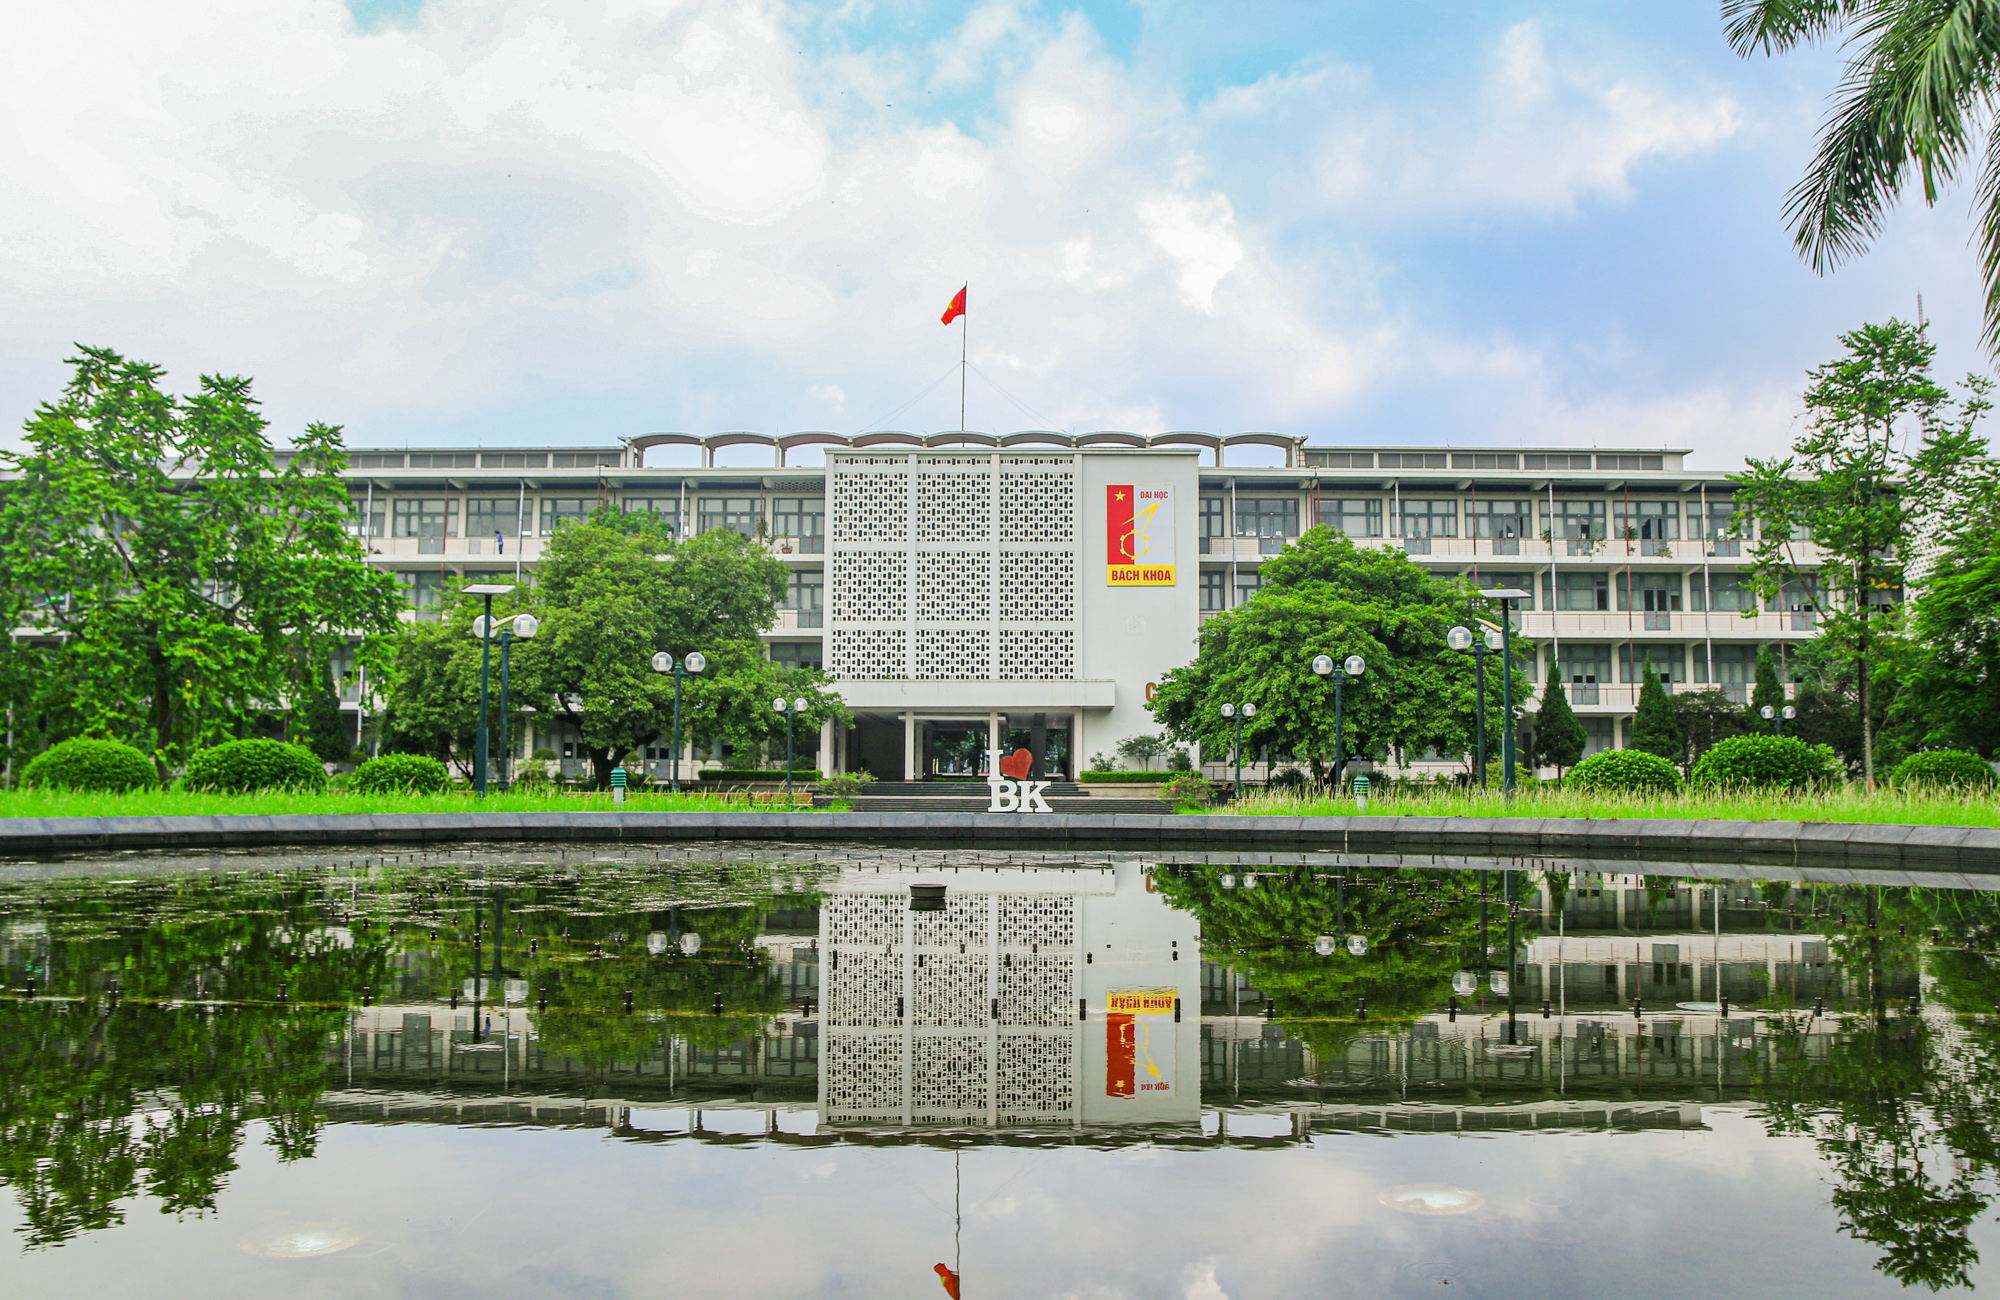 Trường Đại học Bách Khoa: Trường Đại học Bách Khoa là một trong những trường đại học hàng đầu ở Việt Nam với đội ngũ giáo viên có trình độ cao và chương trình đào tạo đa dạng và chất lượng. Ảnh liên quan đến trường ĐH Bách Khoa sẽ giúp bạn thấy rõ ràng những giá trị về chất lượng giáo dục và phong cách sống tại trường này.